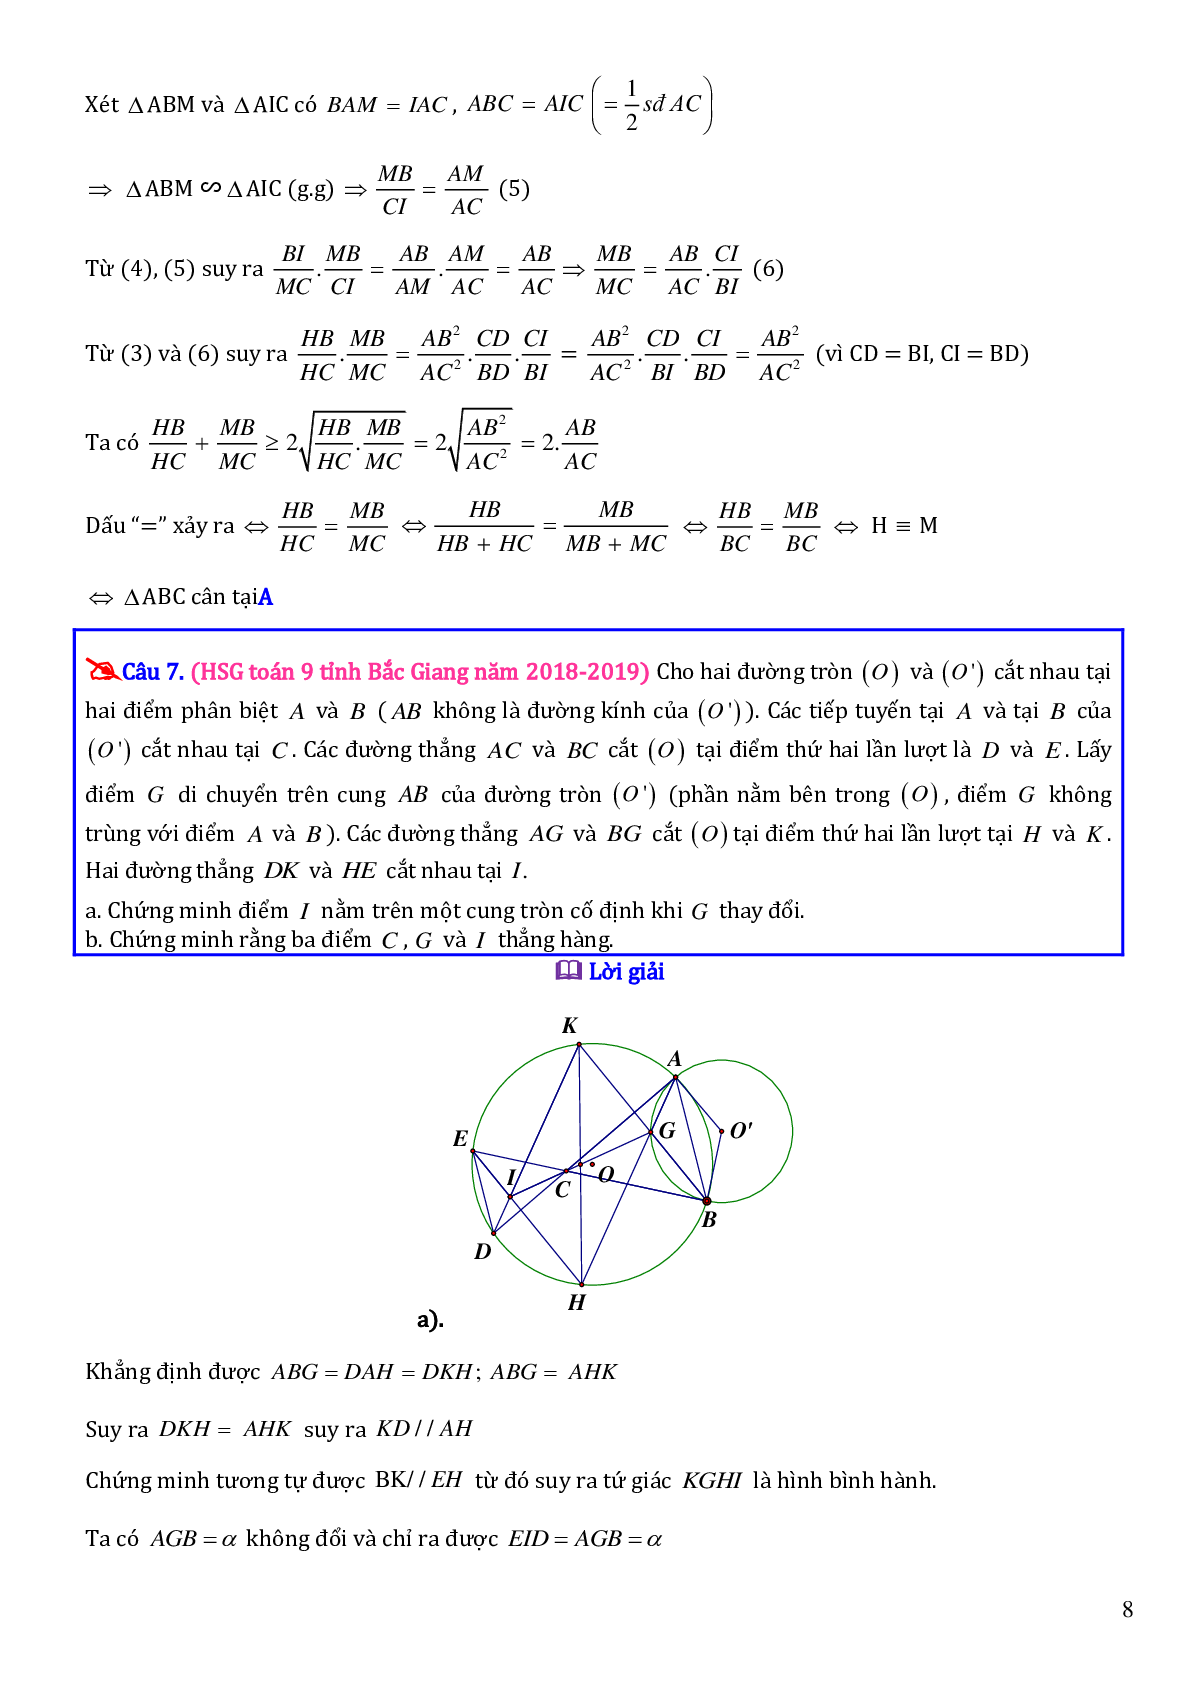 Các bài toán hình học trong đề thi học sinh giỏi toán lớp 9 (trang 8)